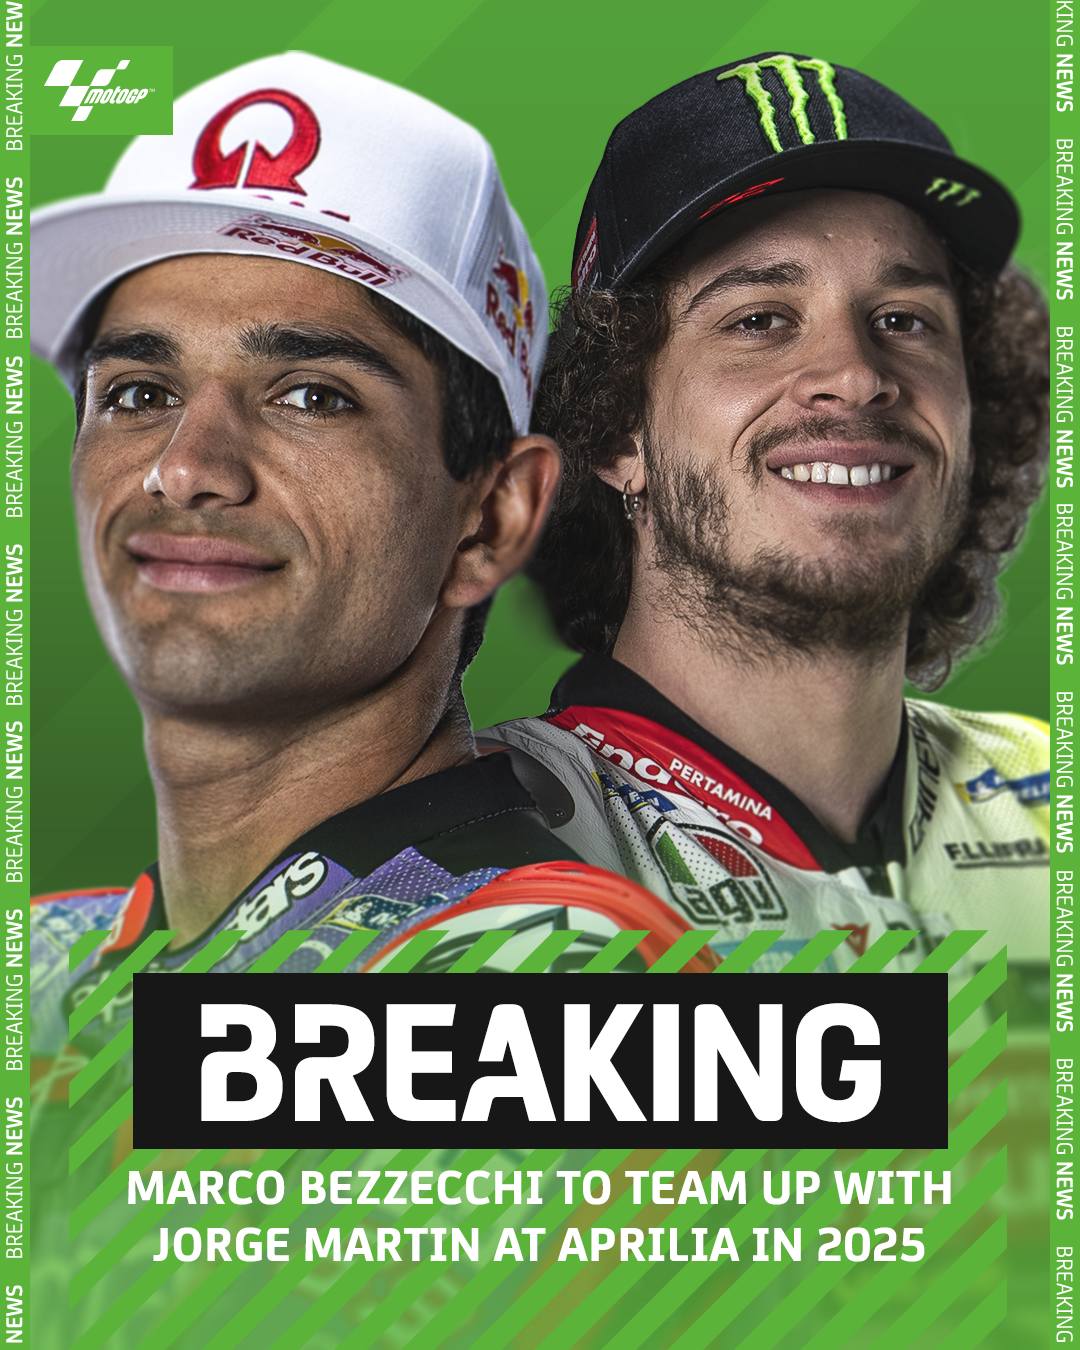 Хорхе Мартин и Марко Беццекки - новая пара заводских пилотов Aprilia Racing MotoGP 2025